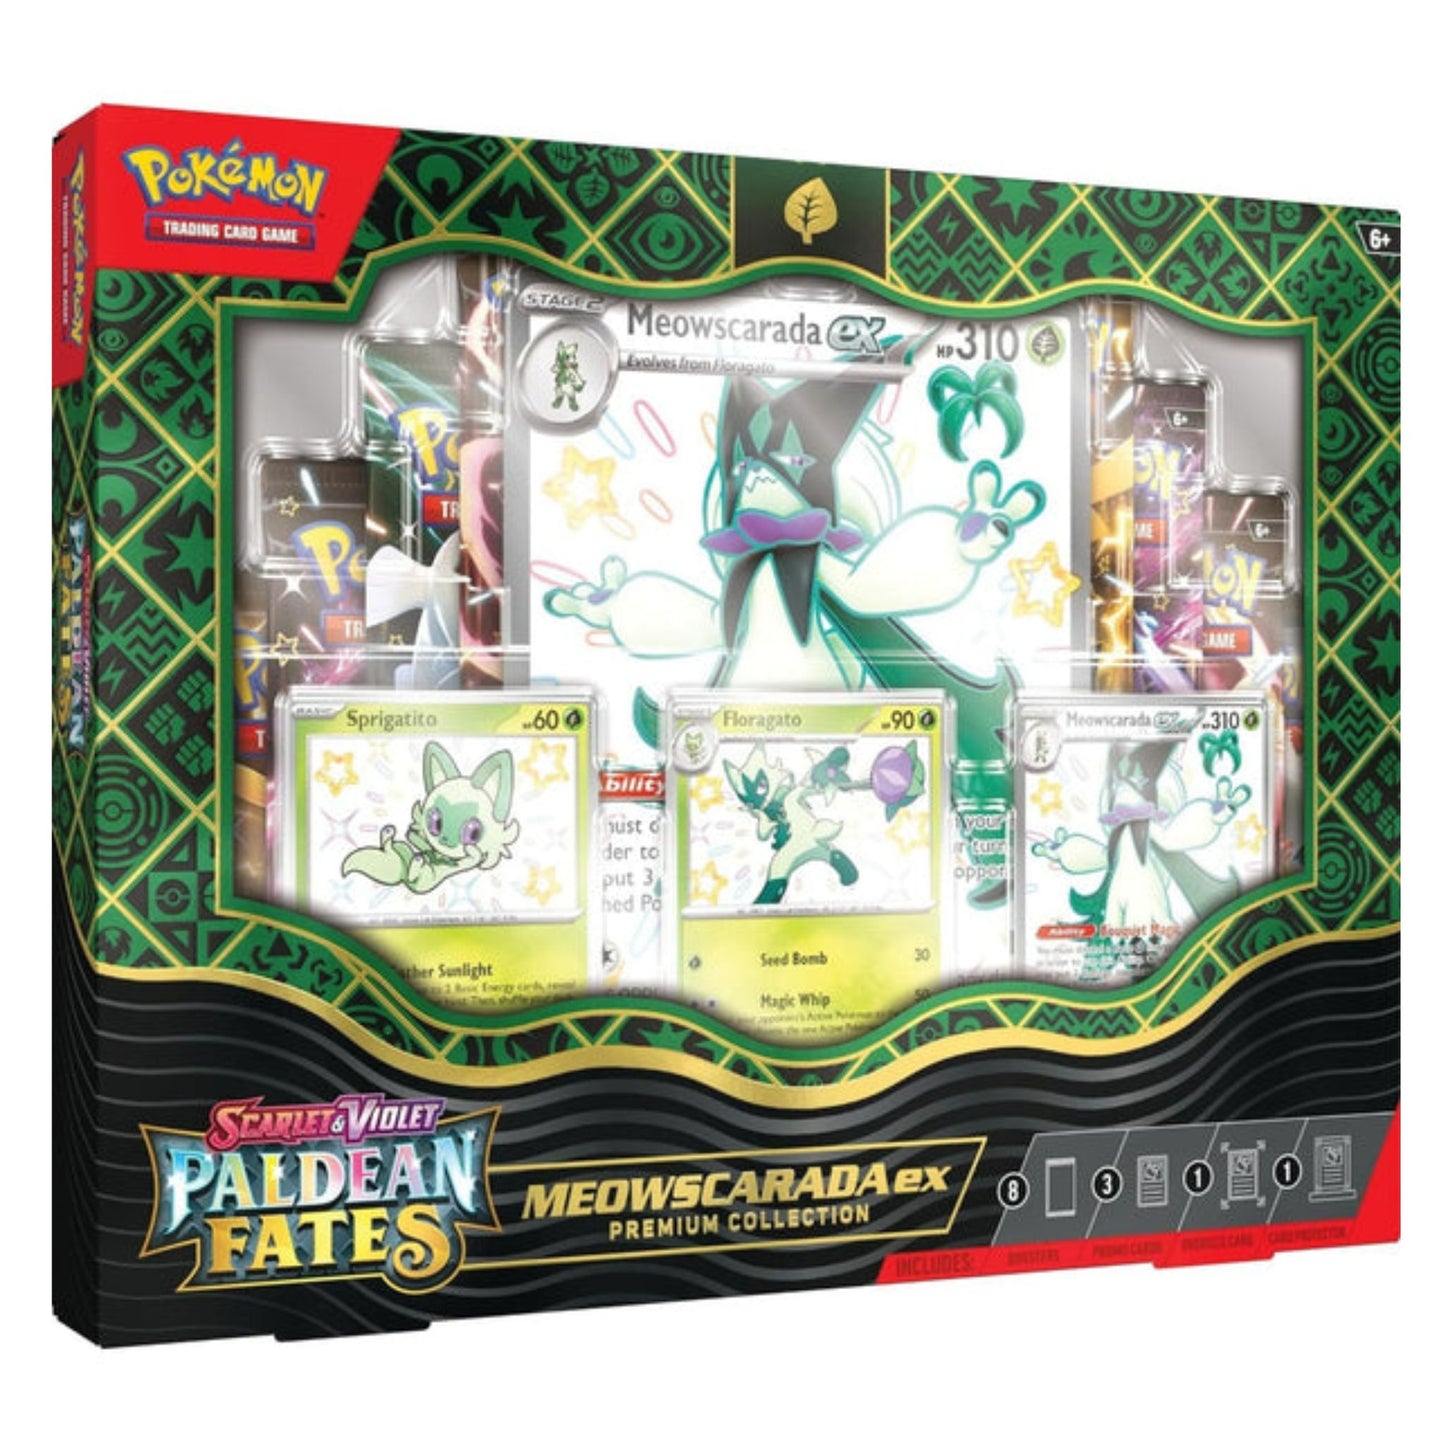 Pokemon Paldean Fates Premium Collection (Meowscarada Ex)